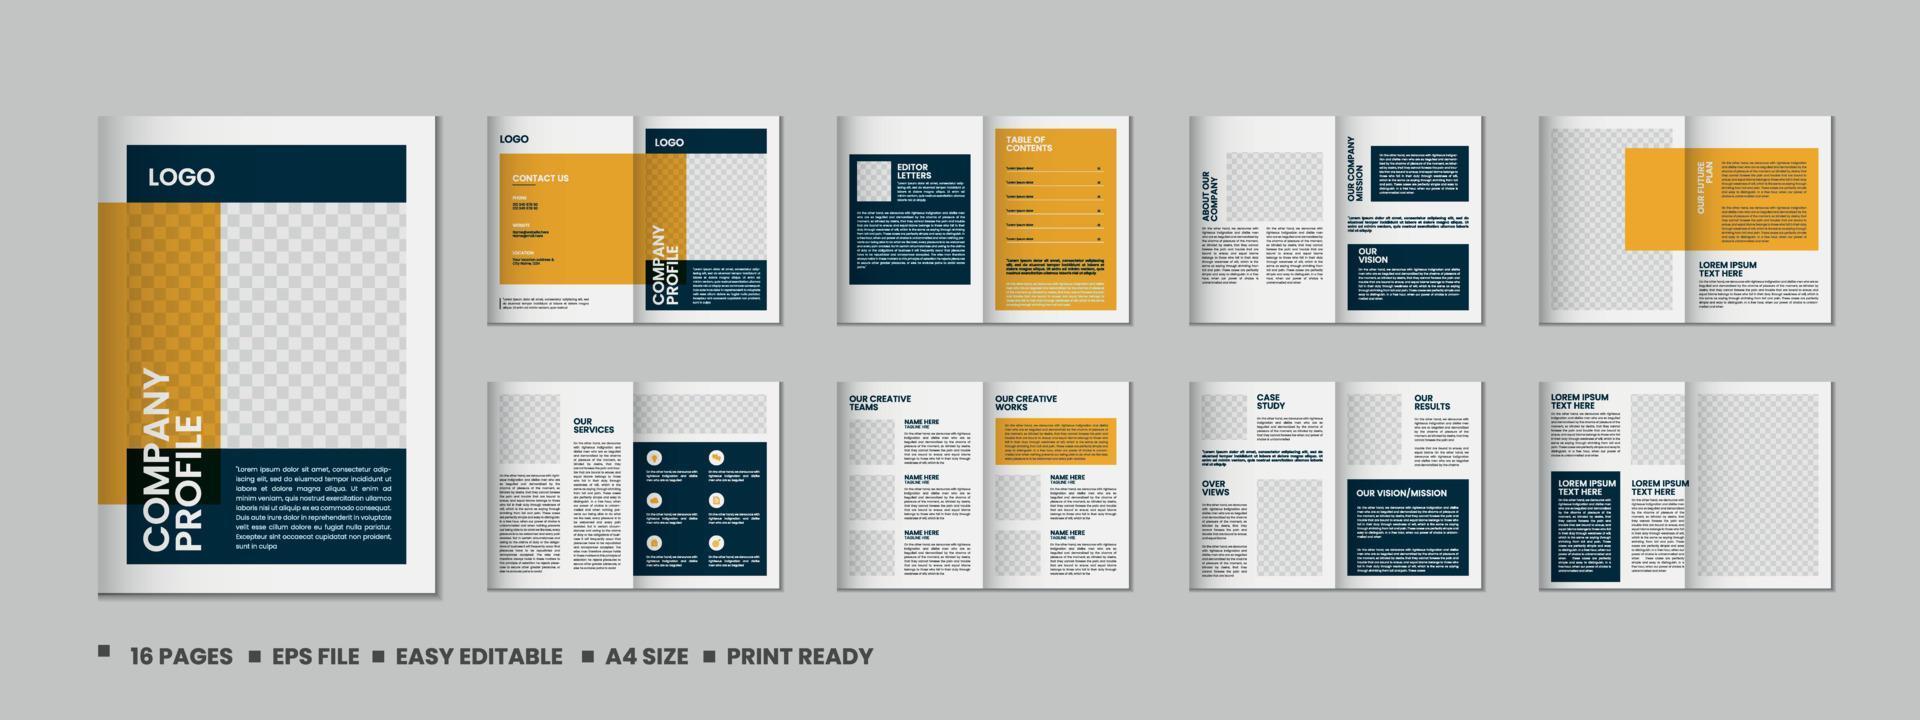 Company profile, 16 pages portfolio magazine and a4 multipurpose architecture brochure template design vector